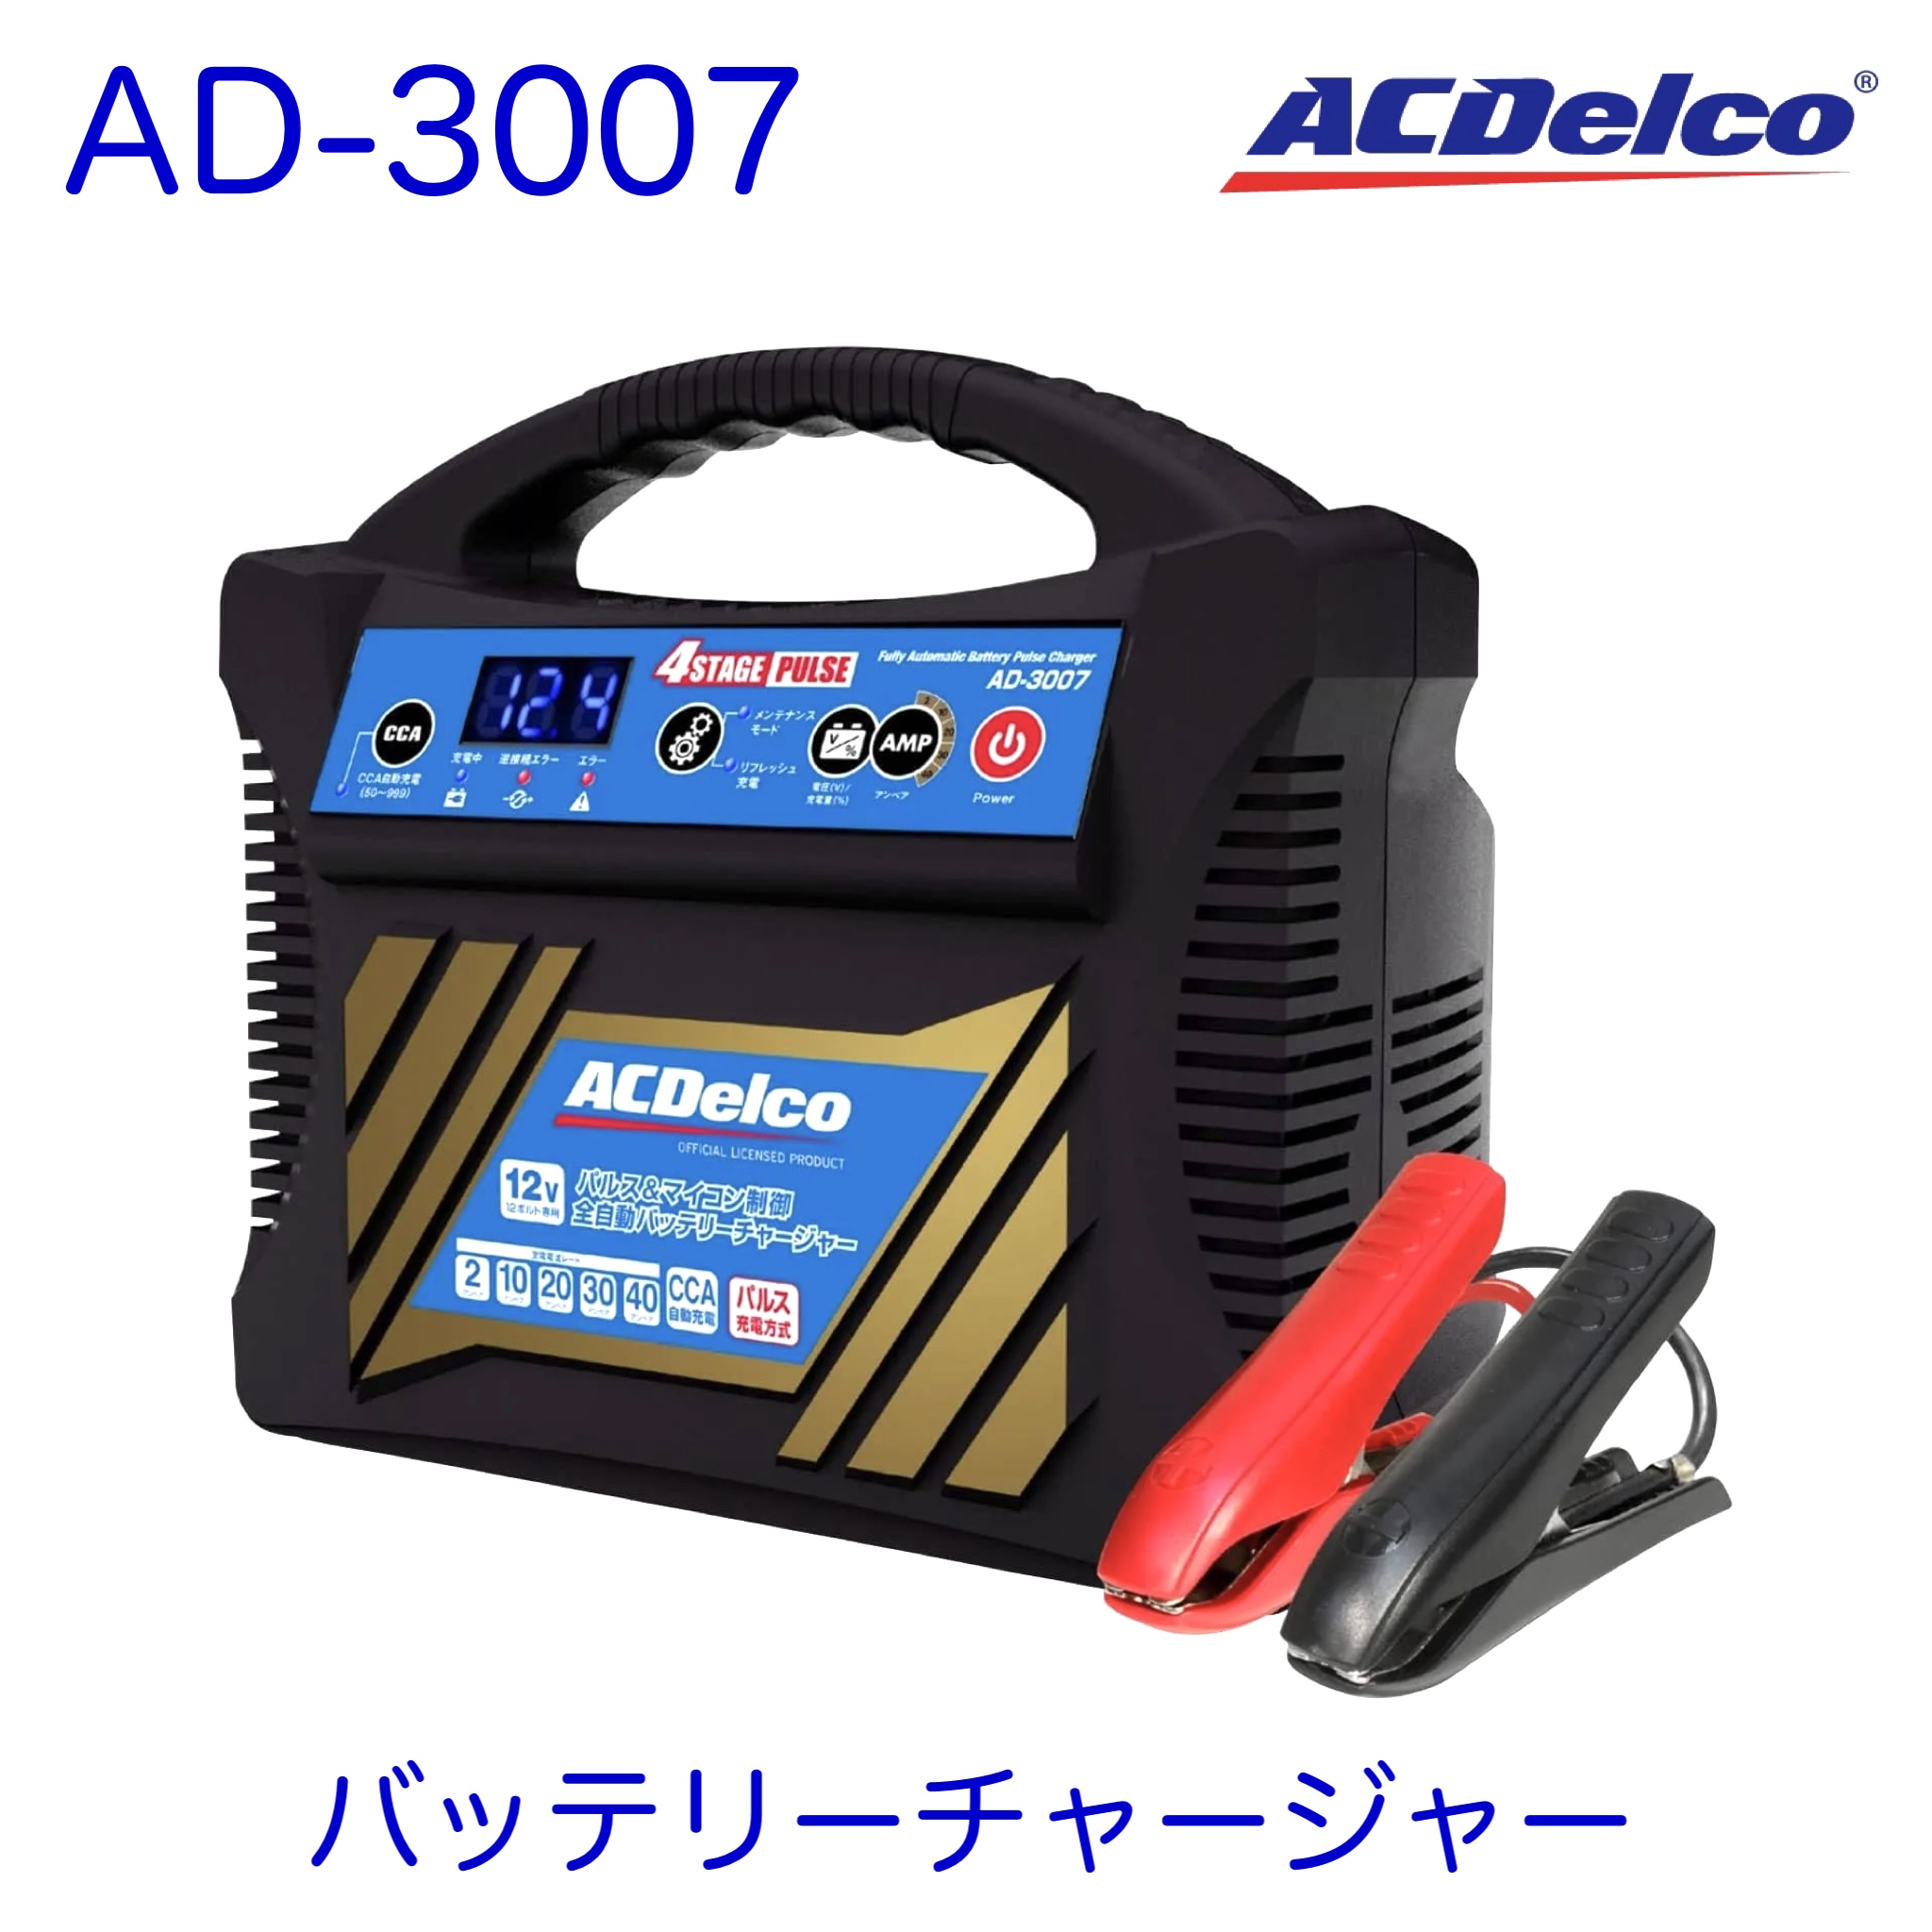 楽天市場】AD-3007 AC Delco ACデルコ 錦之堂 kinshido パルス